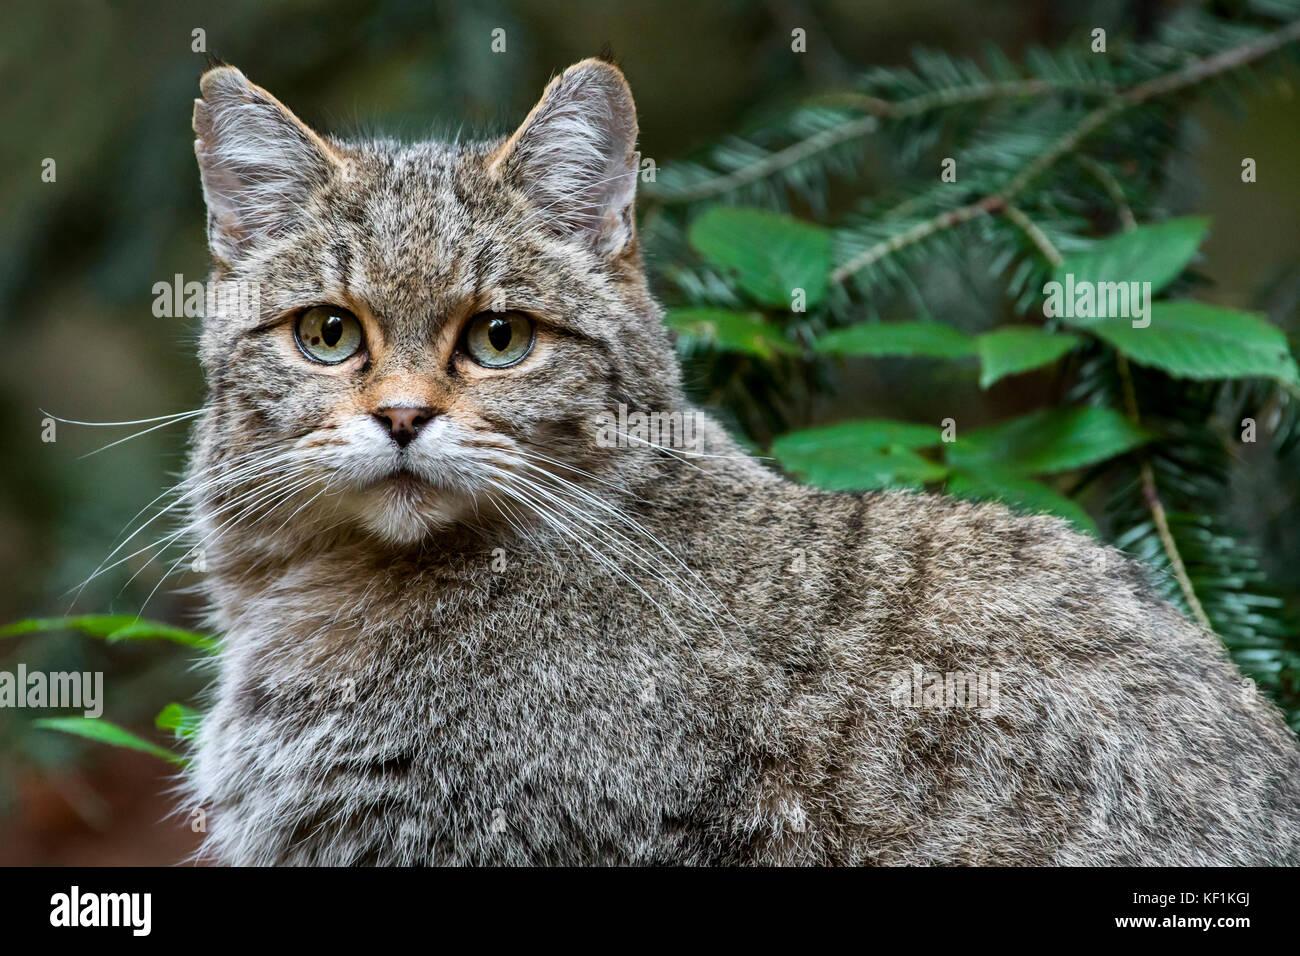 European wildcat / wild cat (Felis silvestris silvestris) close up portrait Stock Photo